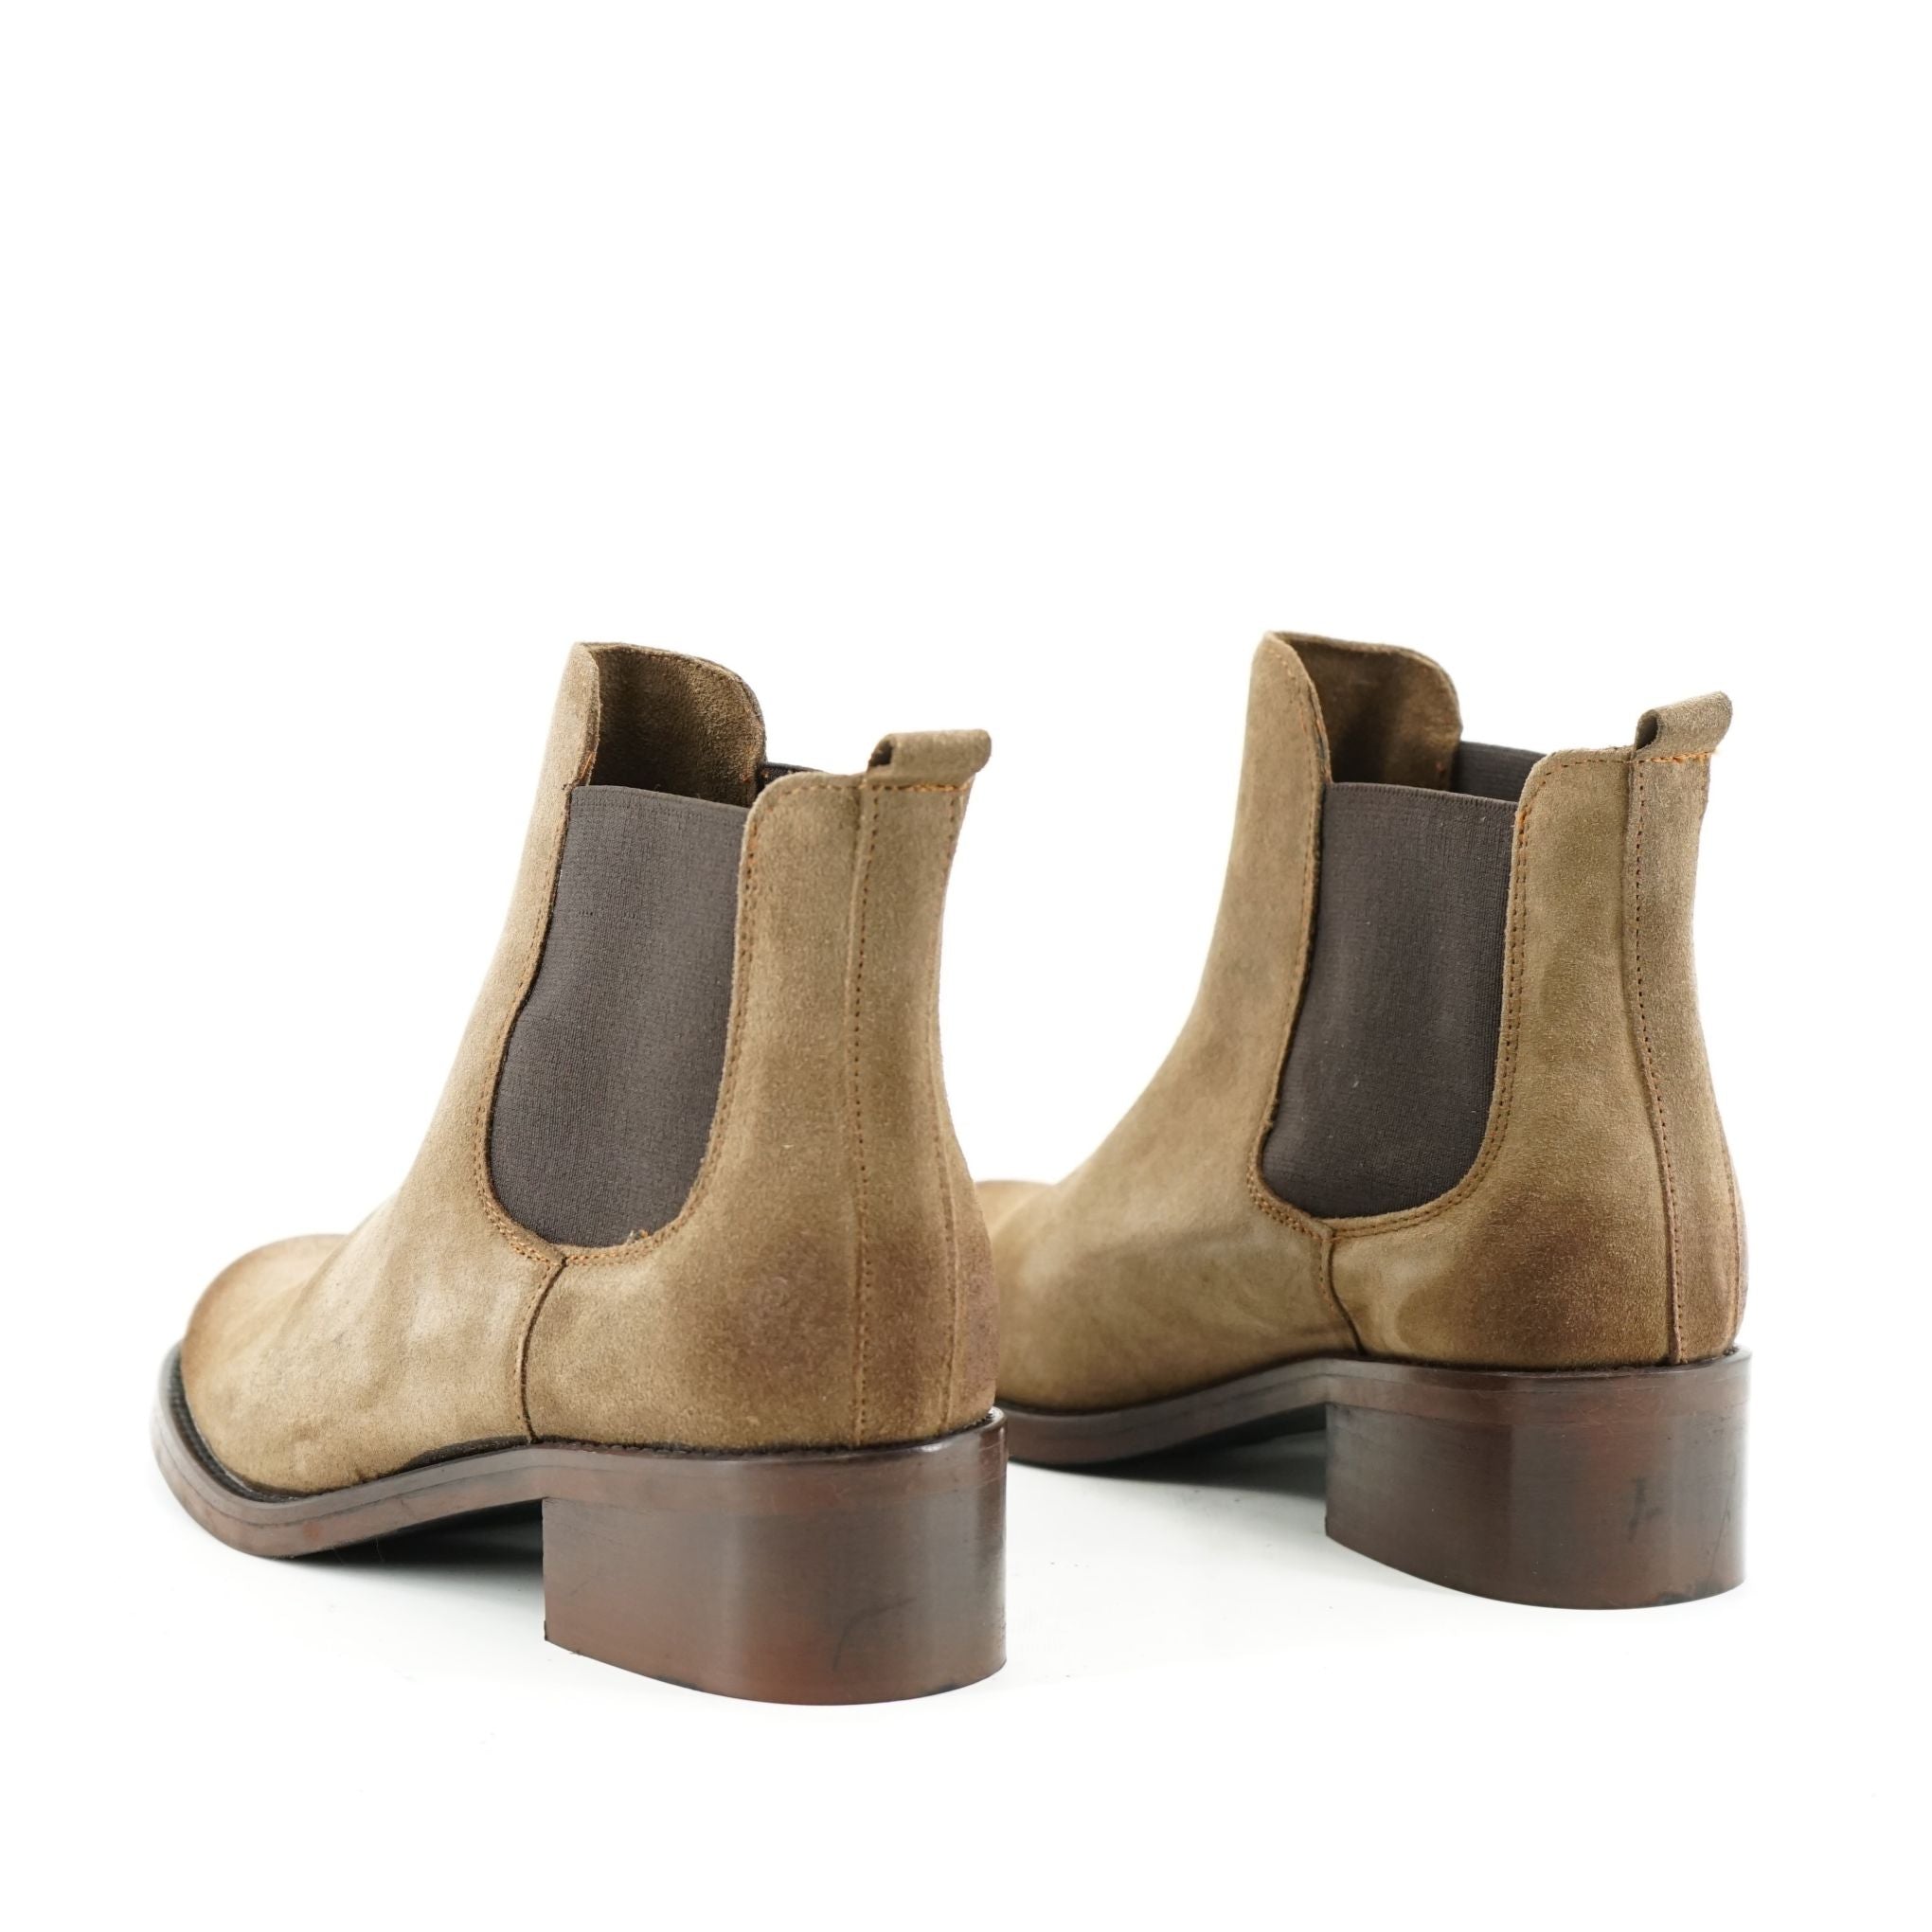 Stivaletti chelsea boots Testa con tacco quadrato in pelle: 8239/01